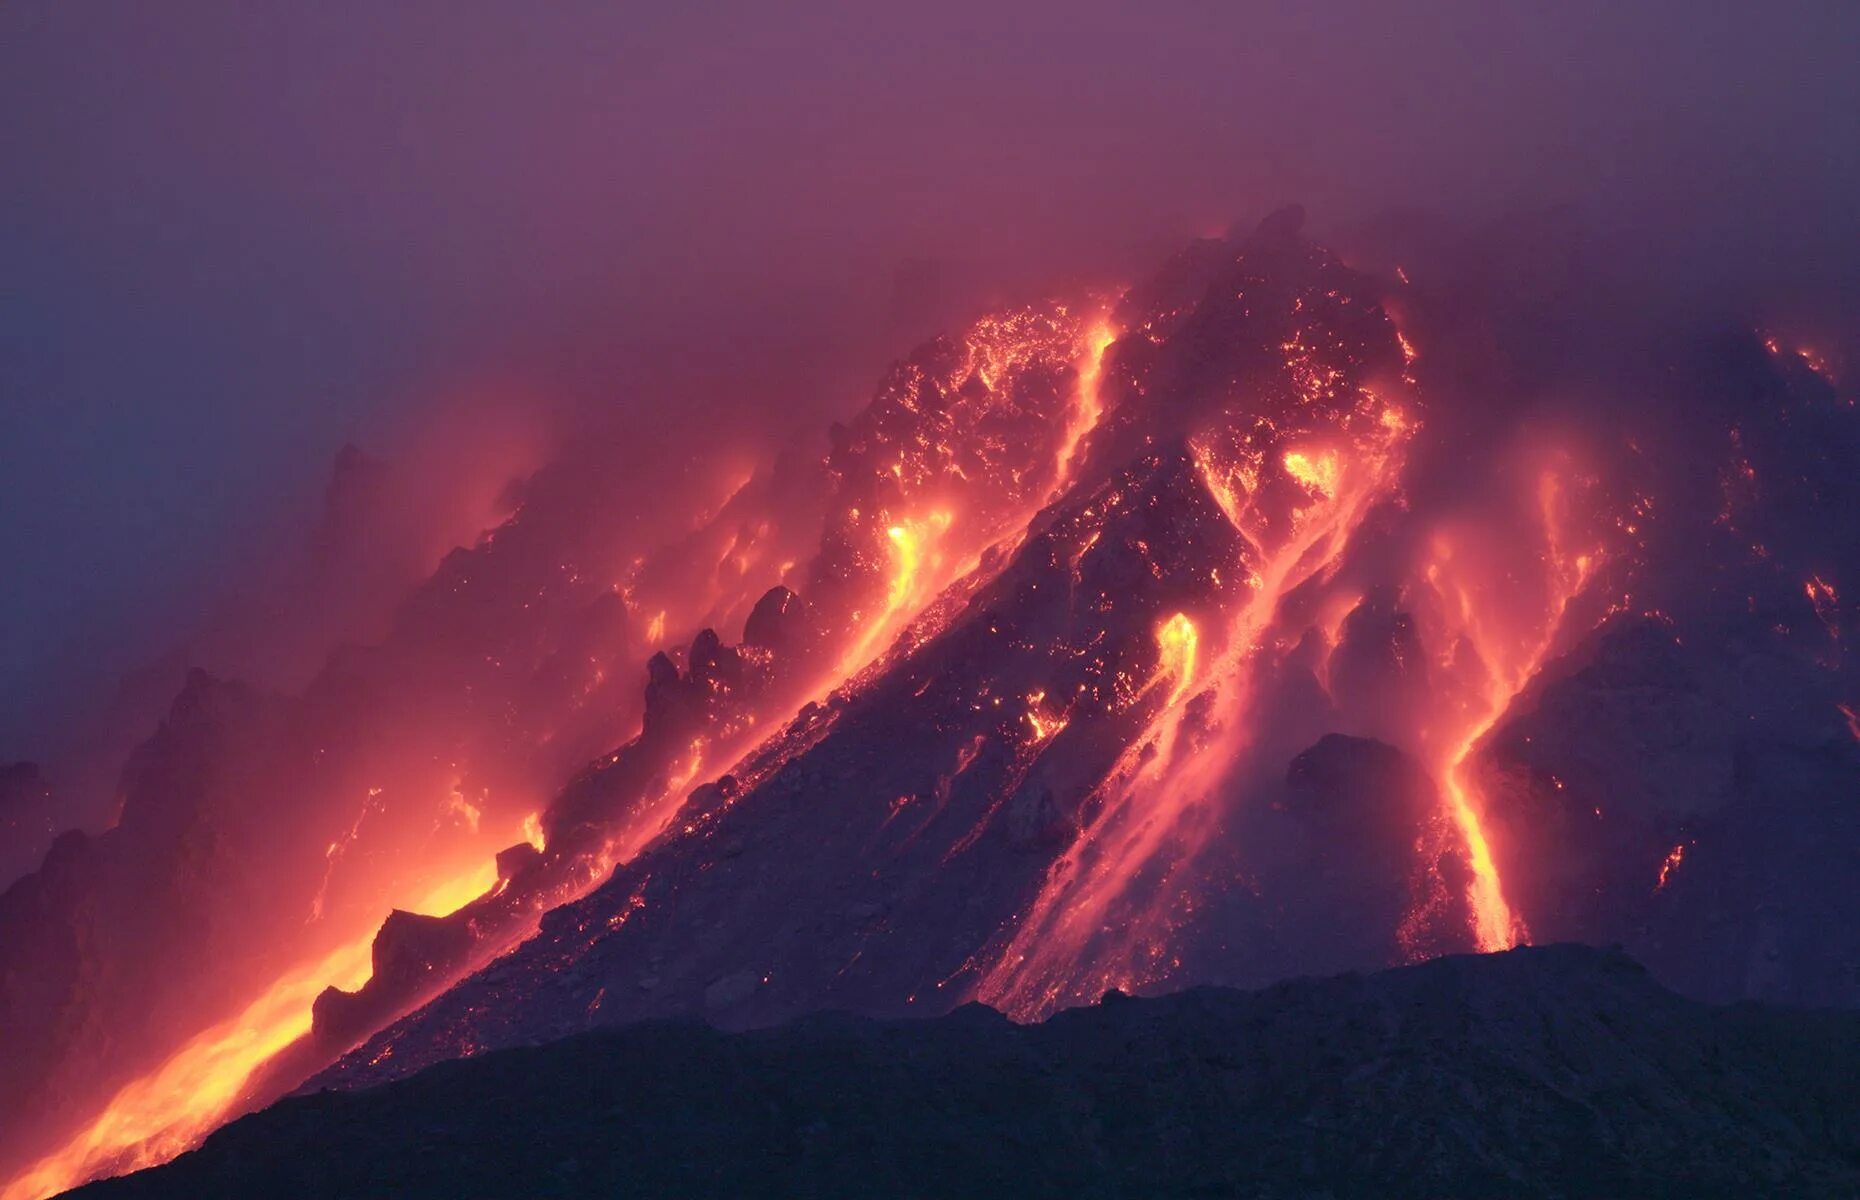 Извержение вулкана какое явление. Суфриер Хиллс извержение. Так, в 1995 году началось извержение вулкана Суфриер-Хиллс. Вулканы извержение вулканов. Суфриер Хиллс вулкан извержение фото.